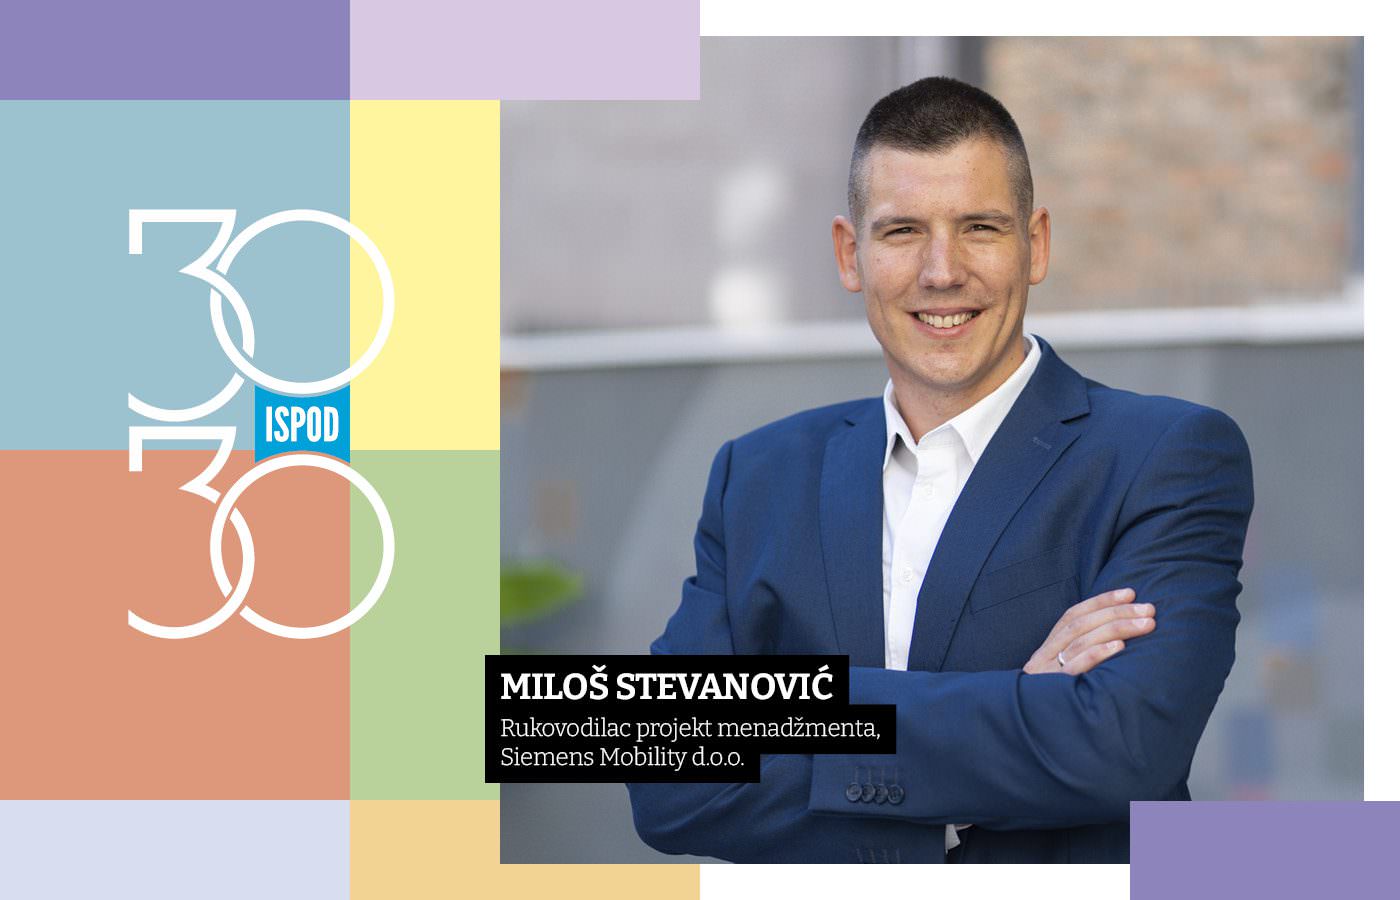 Miloš Stevanović, Siemens Mobility d.o.o.